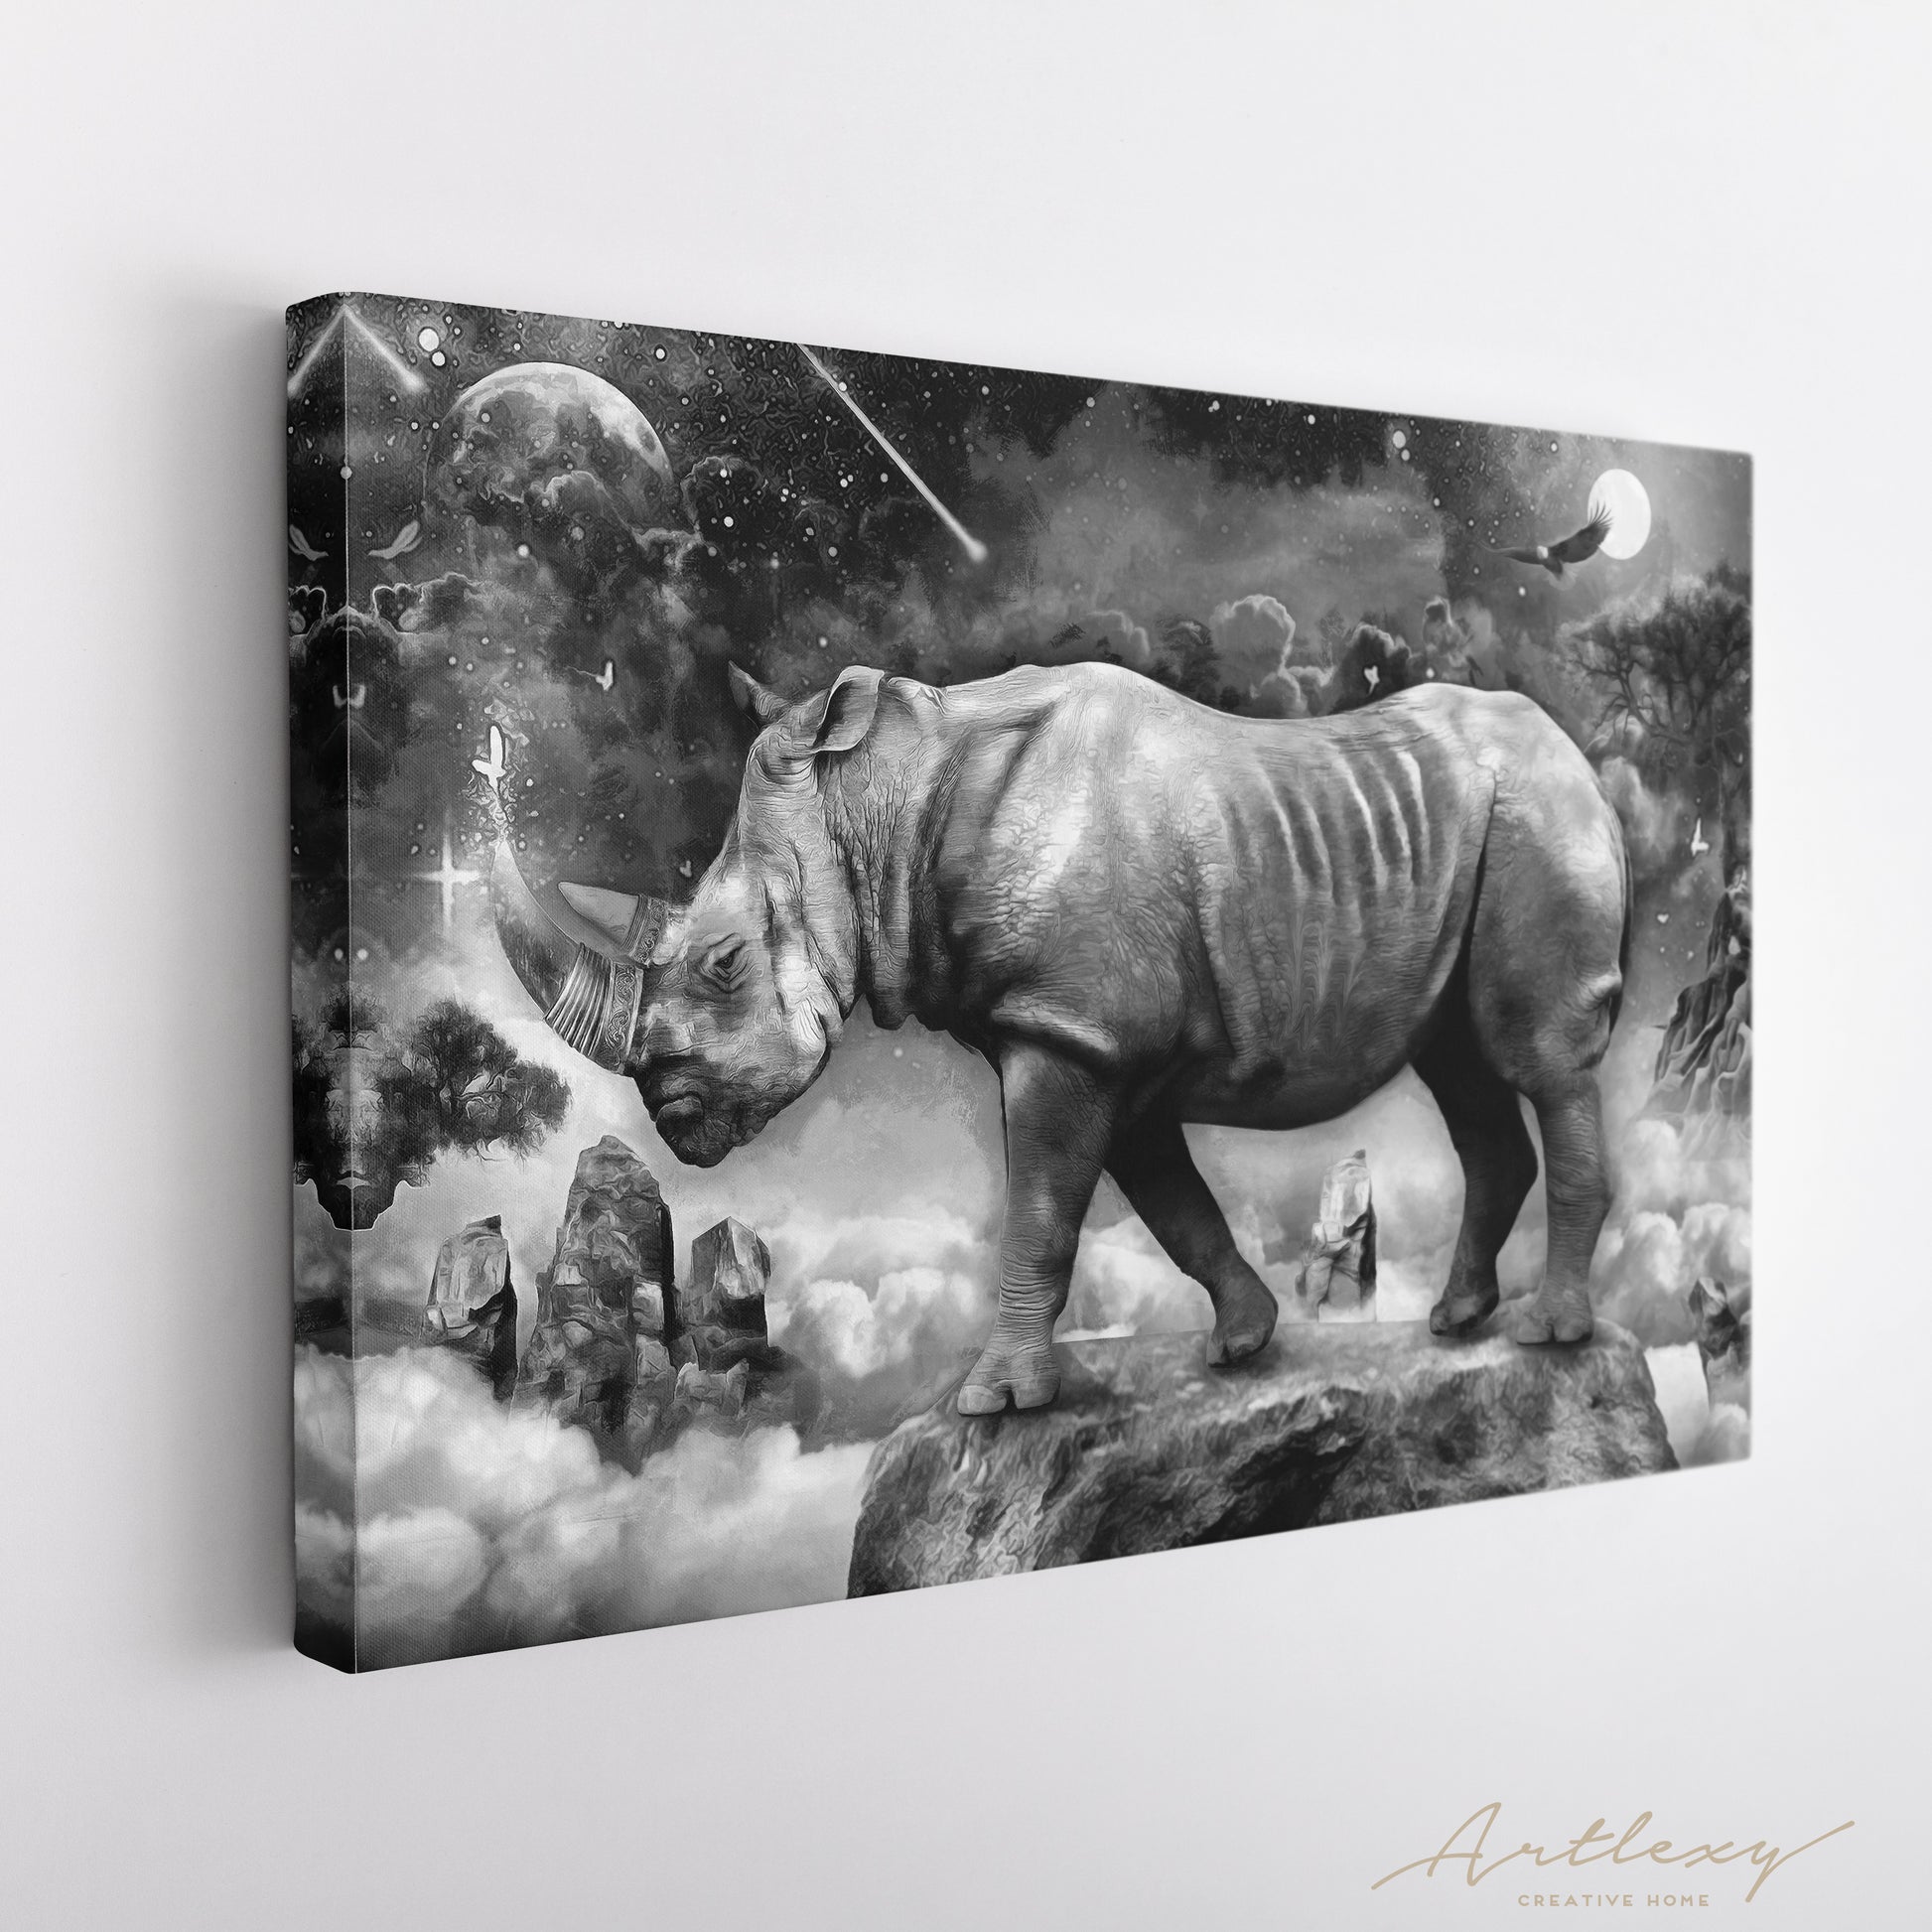 Rhinoceros in Fantasy World Canvas Print ArtLexy   